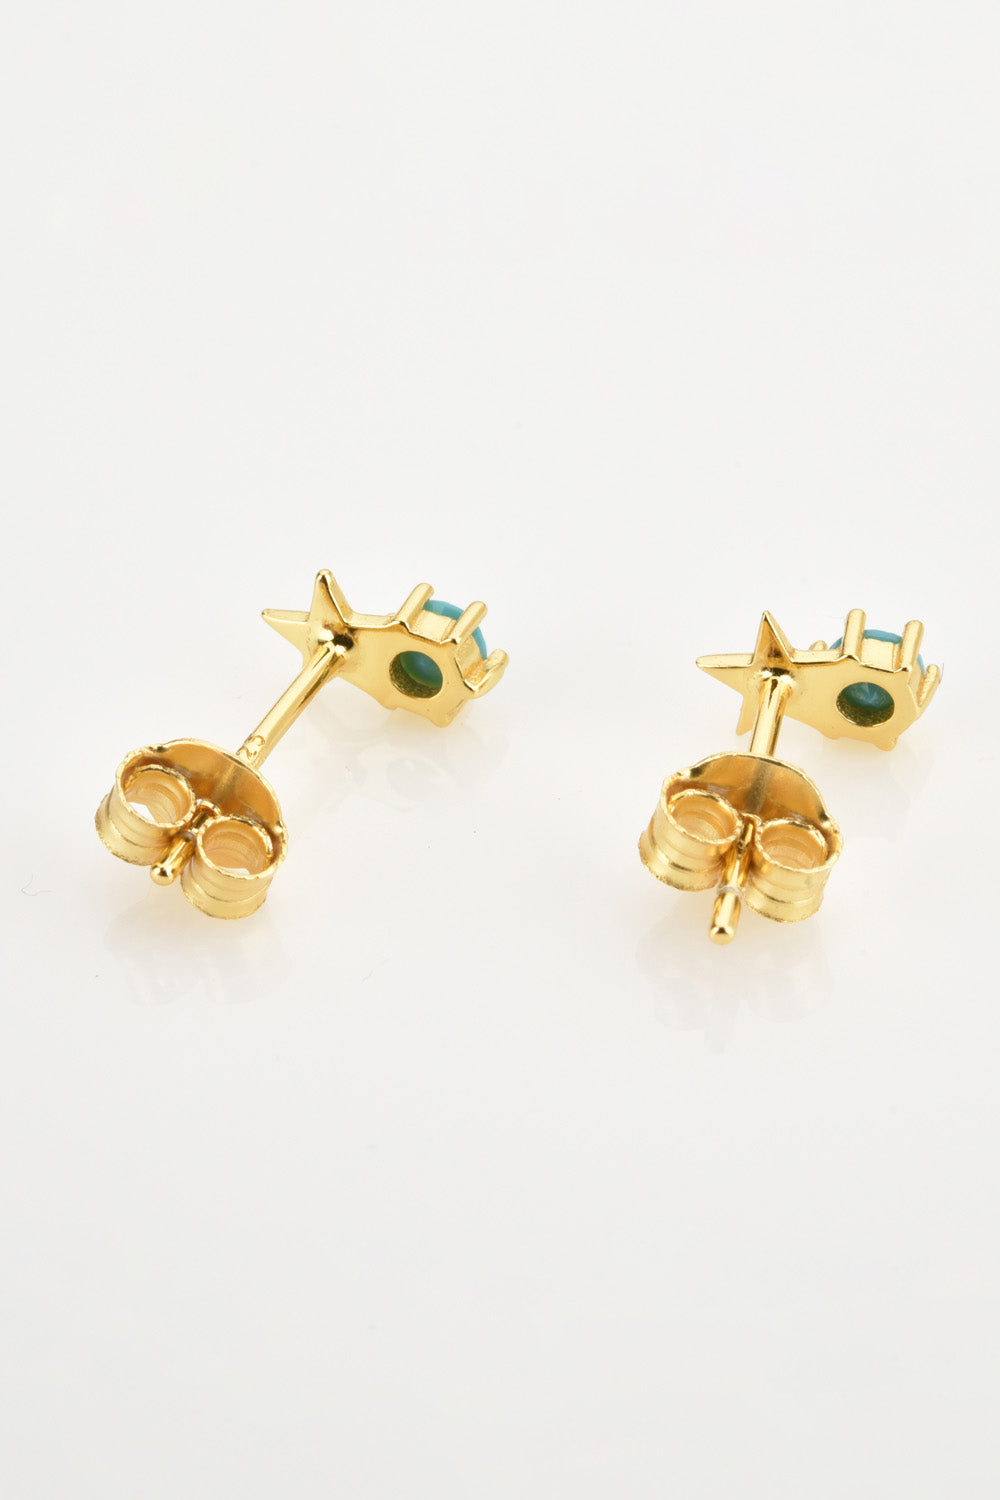 Zircon Star Stud Earrings - Earrings - FITGGINS